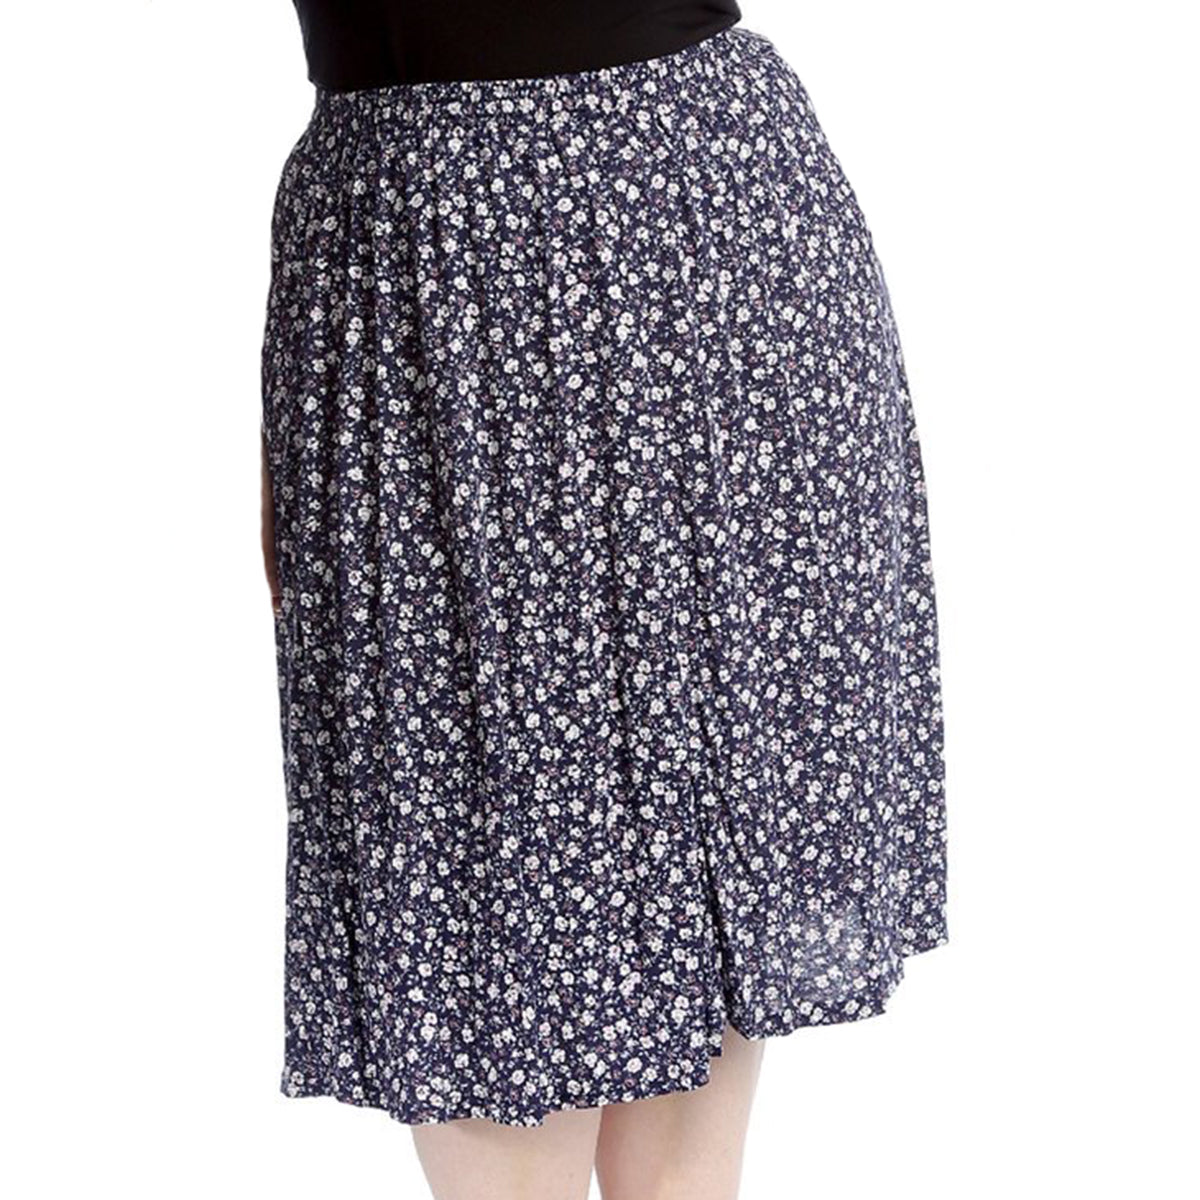 Elastic Waist patterned UPPER CALF length skirt - PLUS SIZES